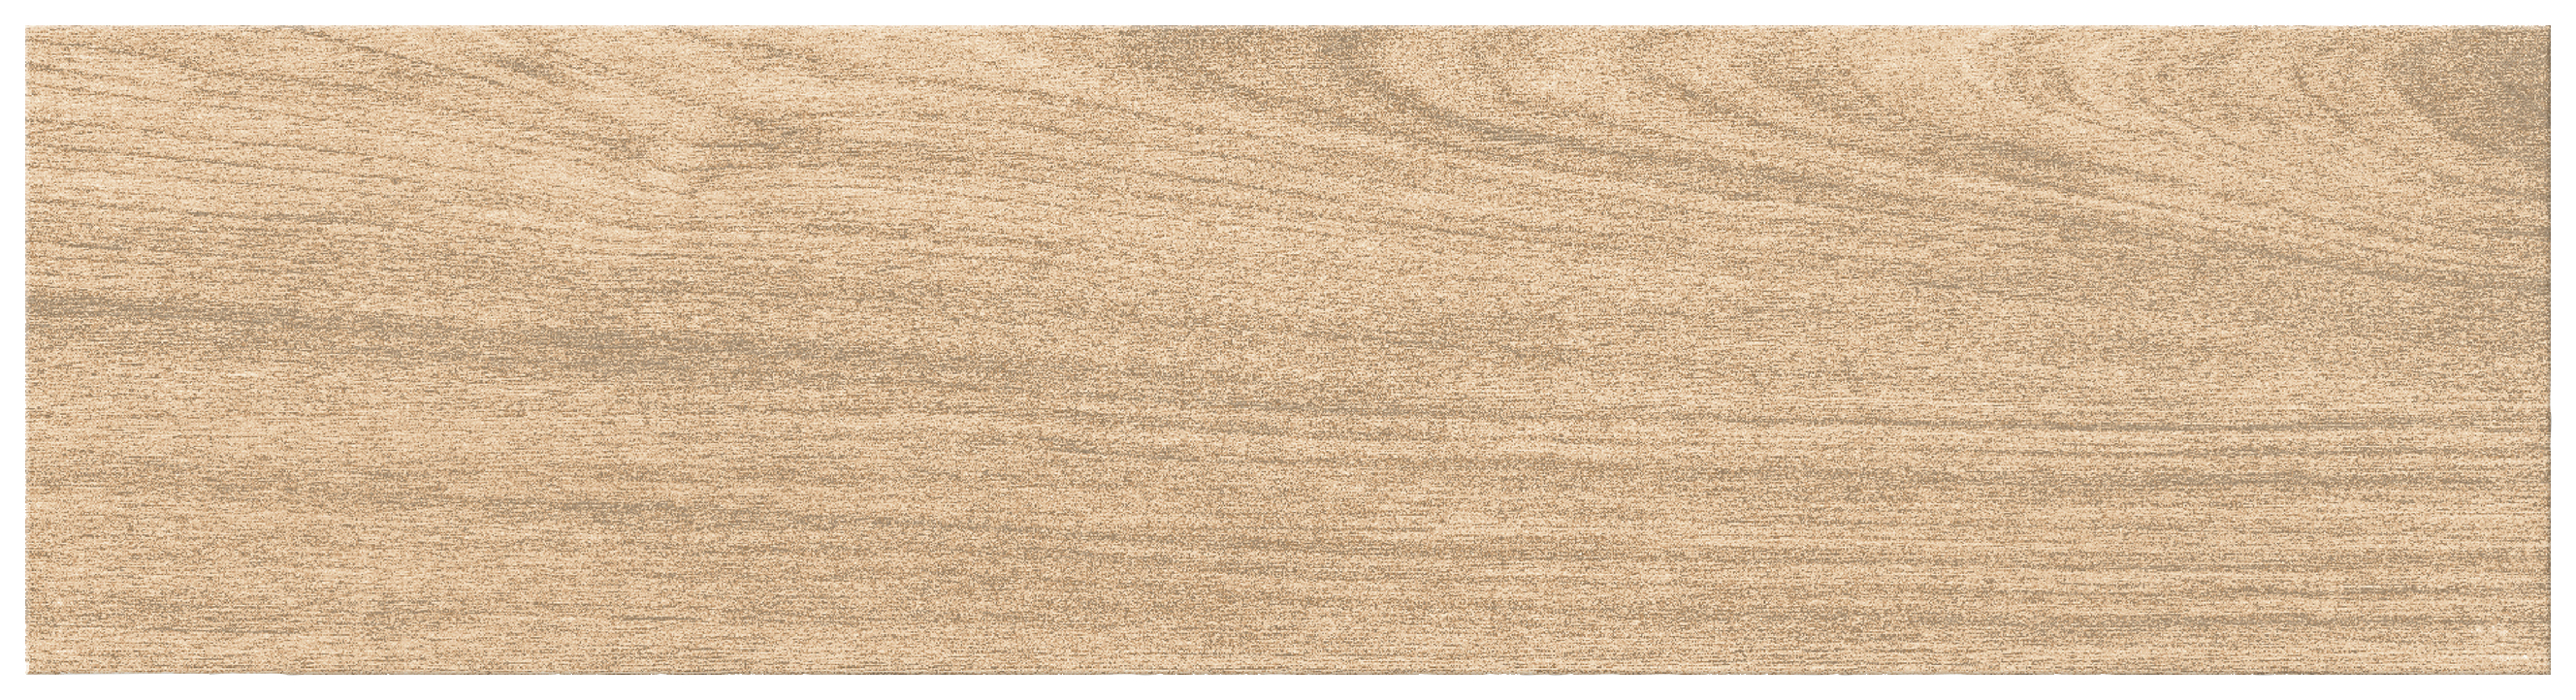 Wickes River Oak Wood Effect Porcelain Wall & Floor - 150 x 600mm - Sample